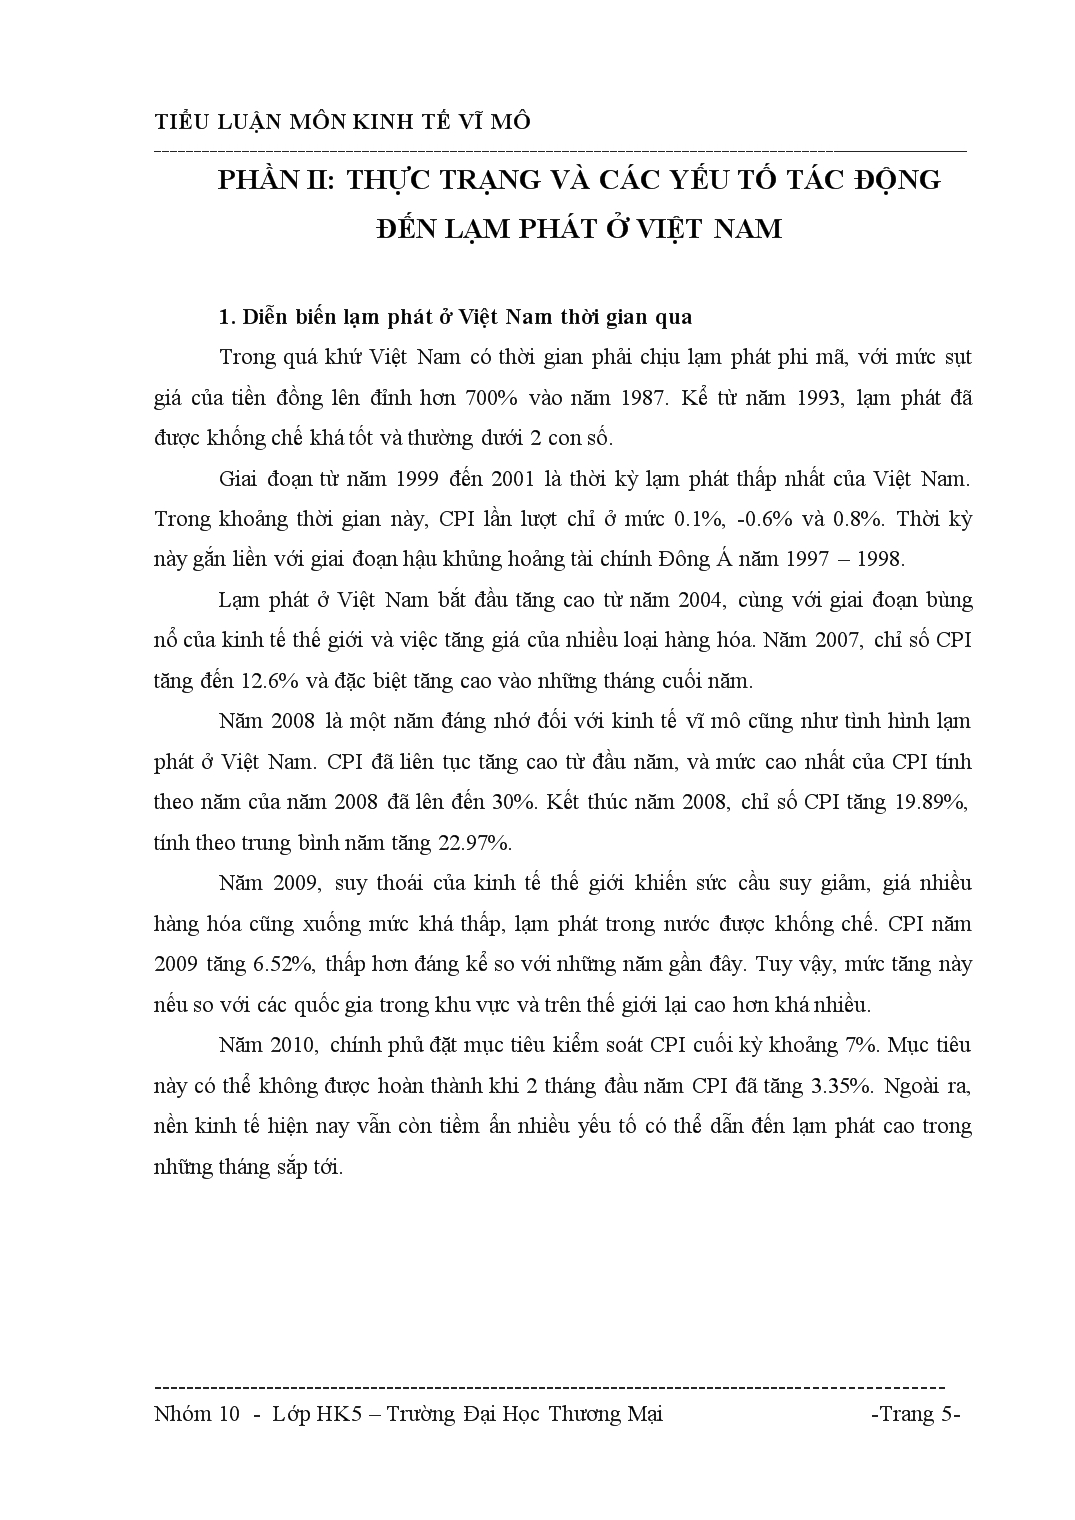 Tiểu luận Lạm phát và biện pháp kiềm chế, kiểm soát lạm phát ở Việt Nam hiện nay trang 5